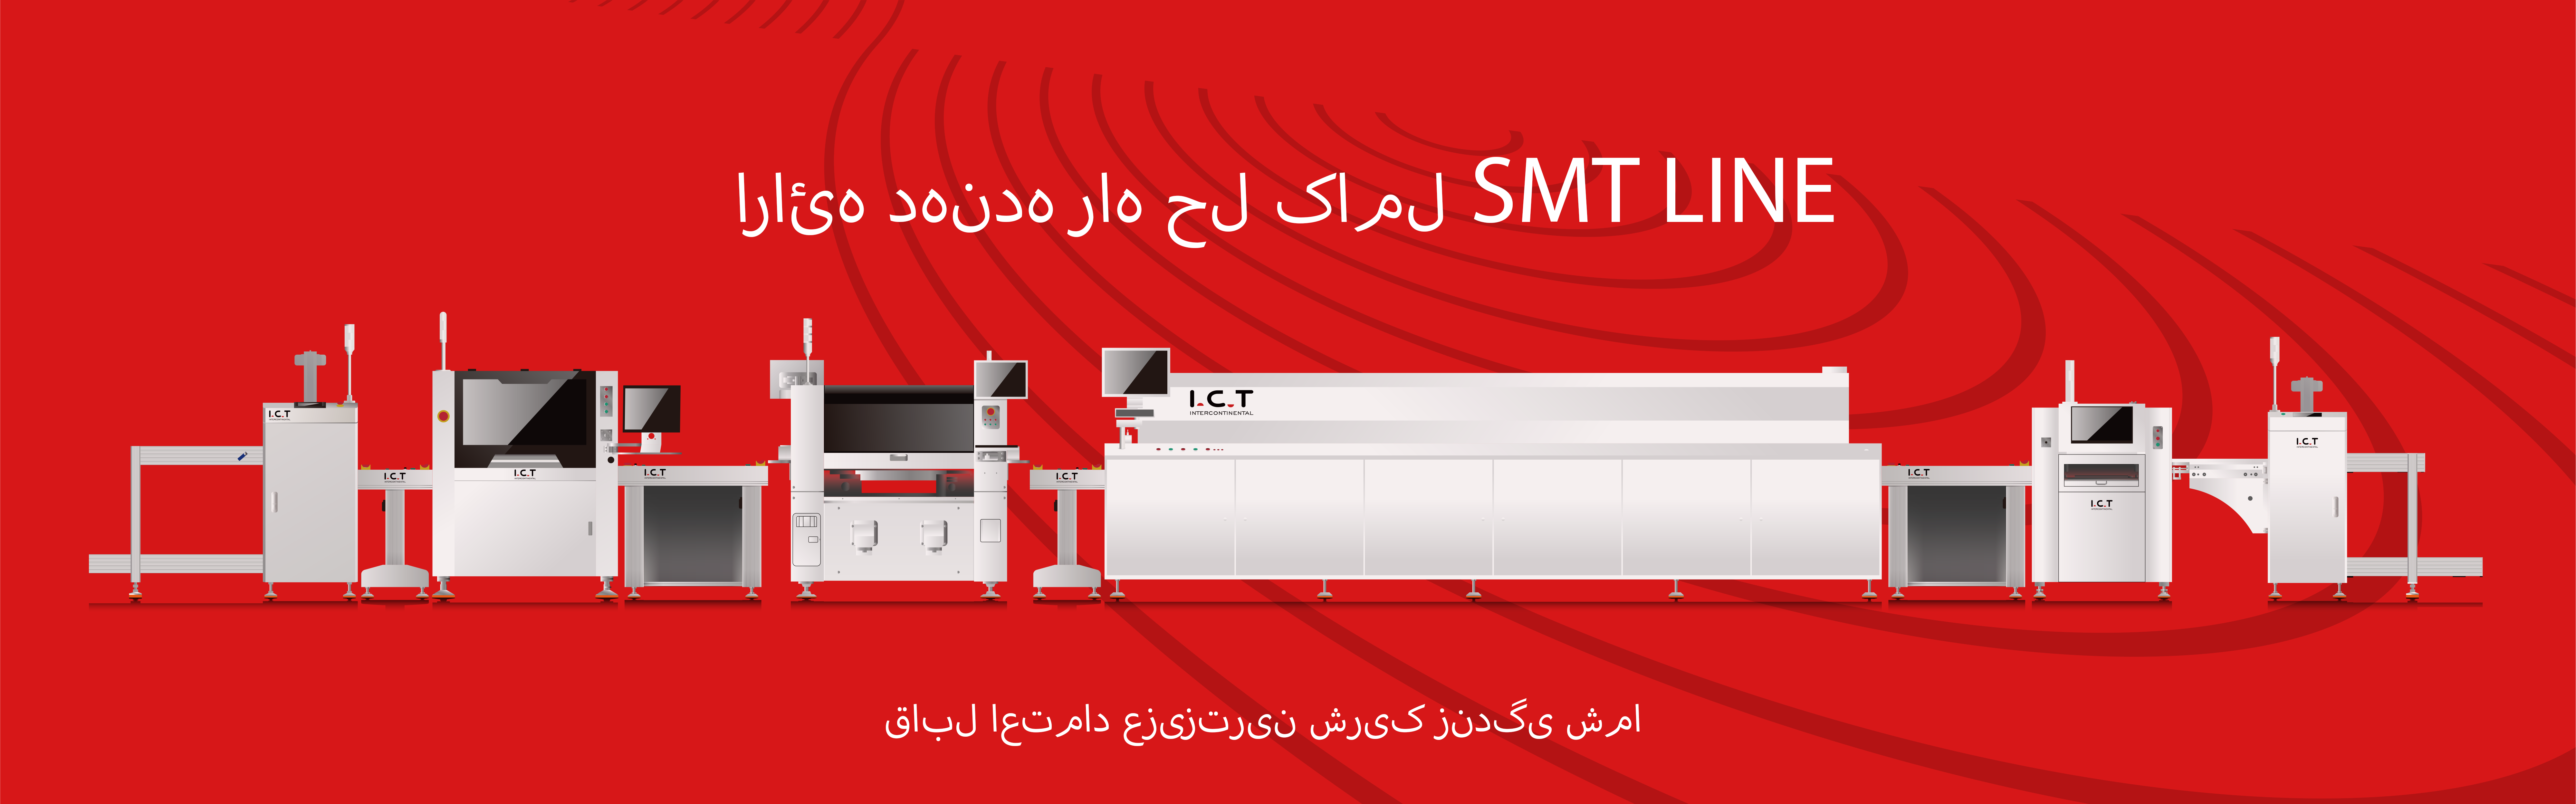 SMT production Line